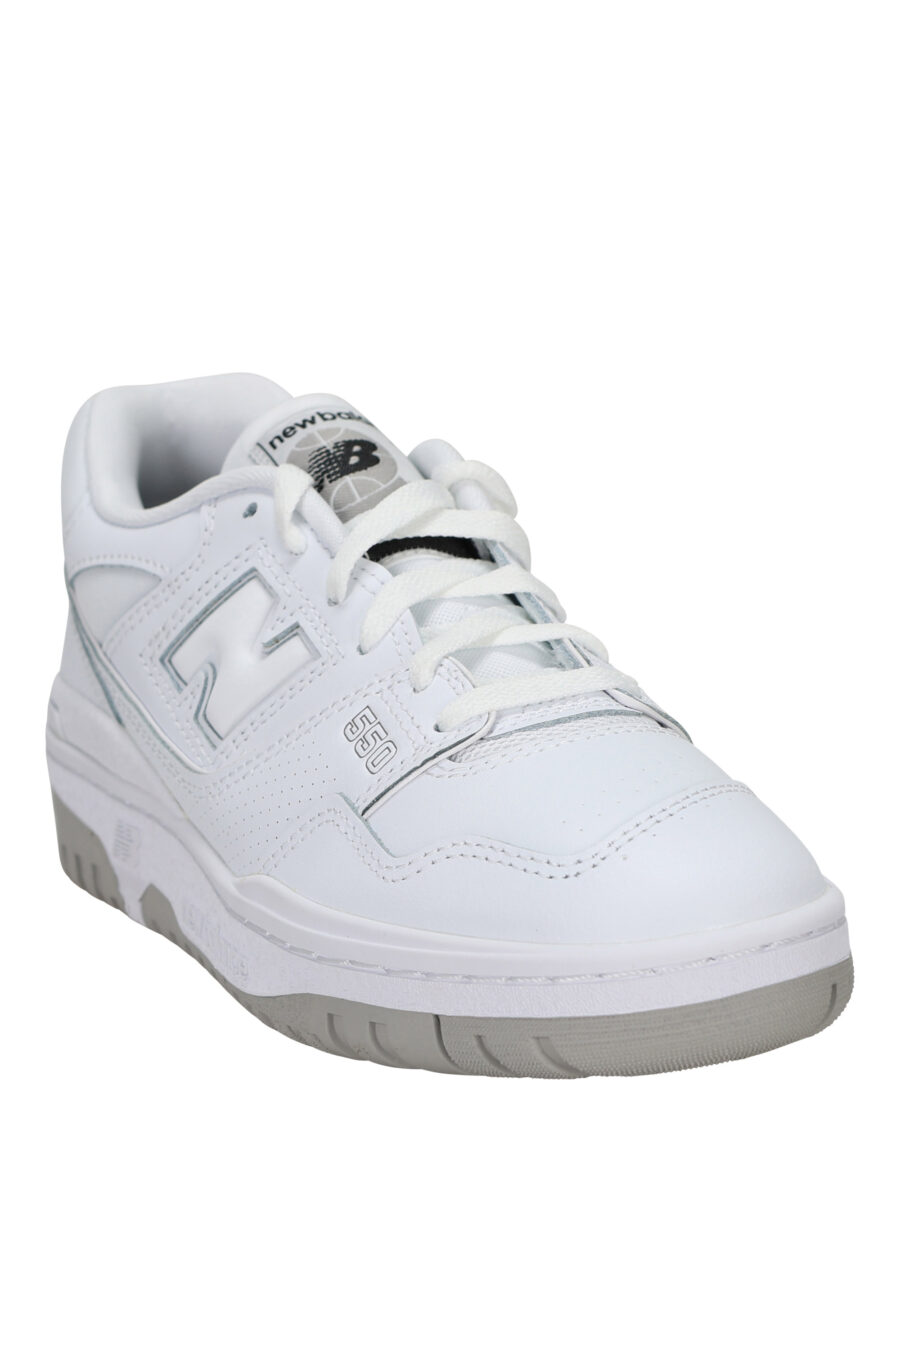 Zapatillas blancas mix con gris "550" y logo "N" blanco - 194768756931 1